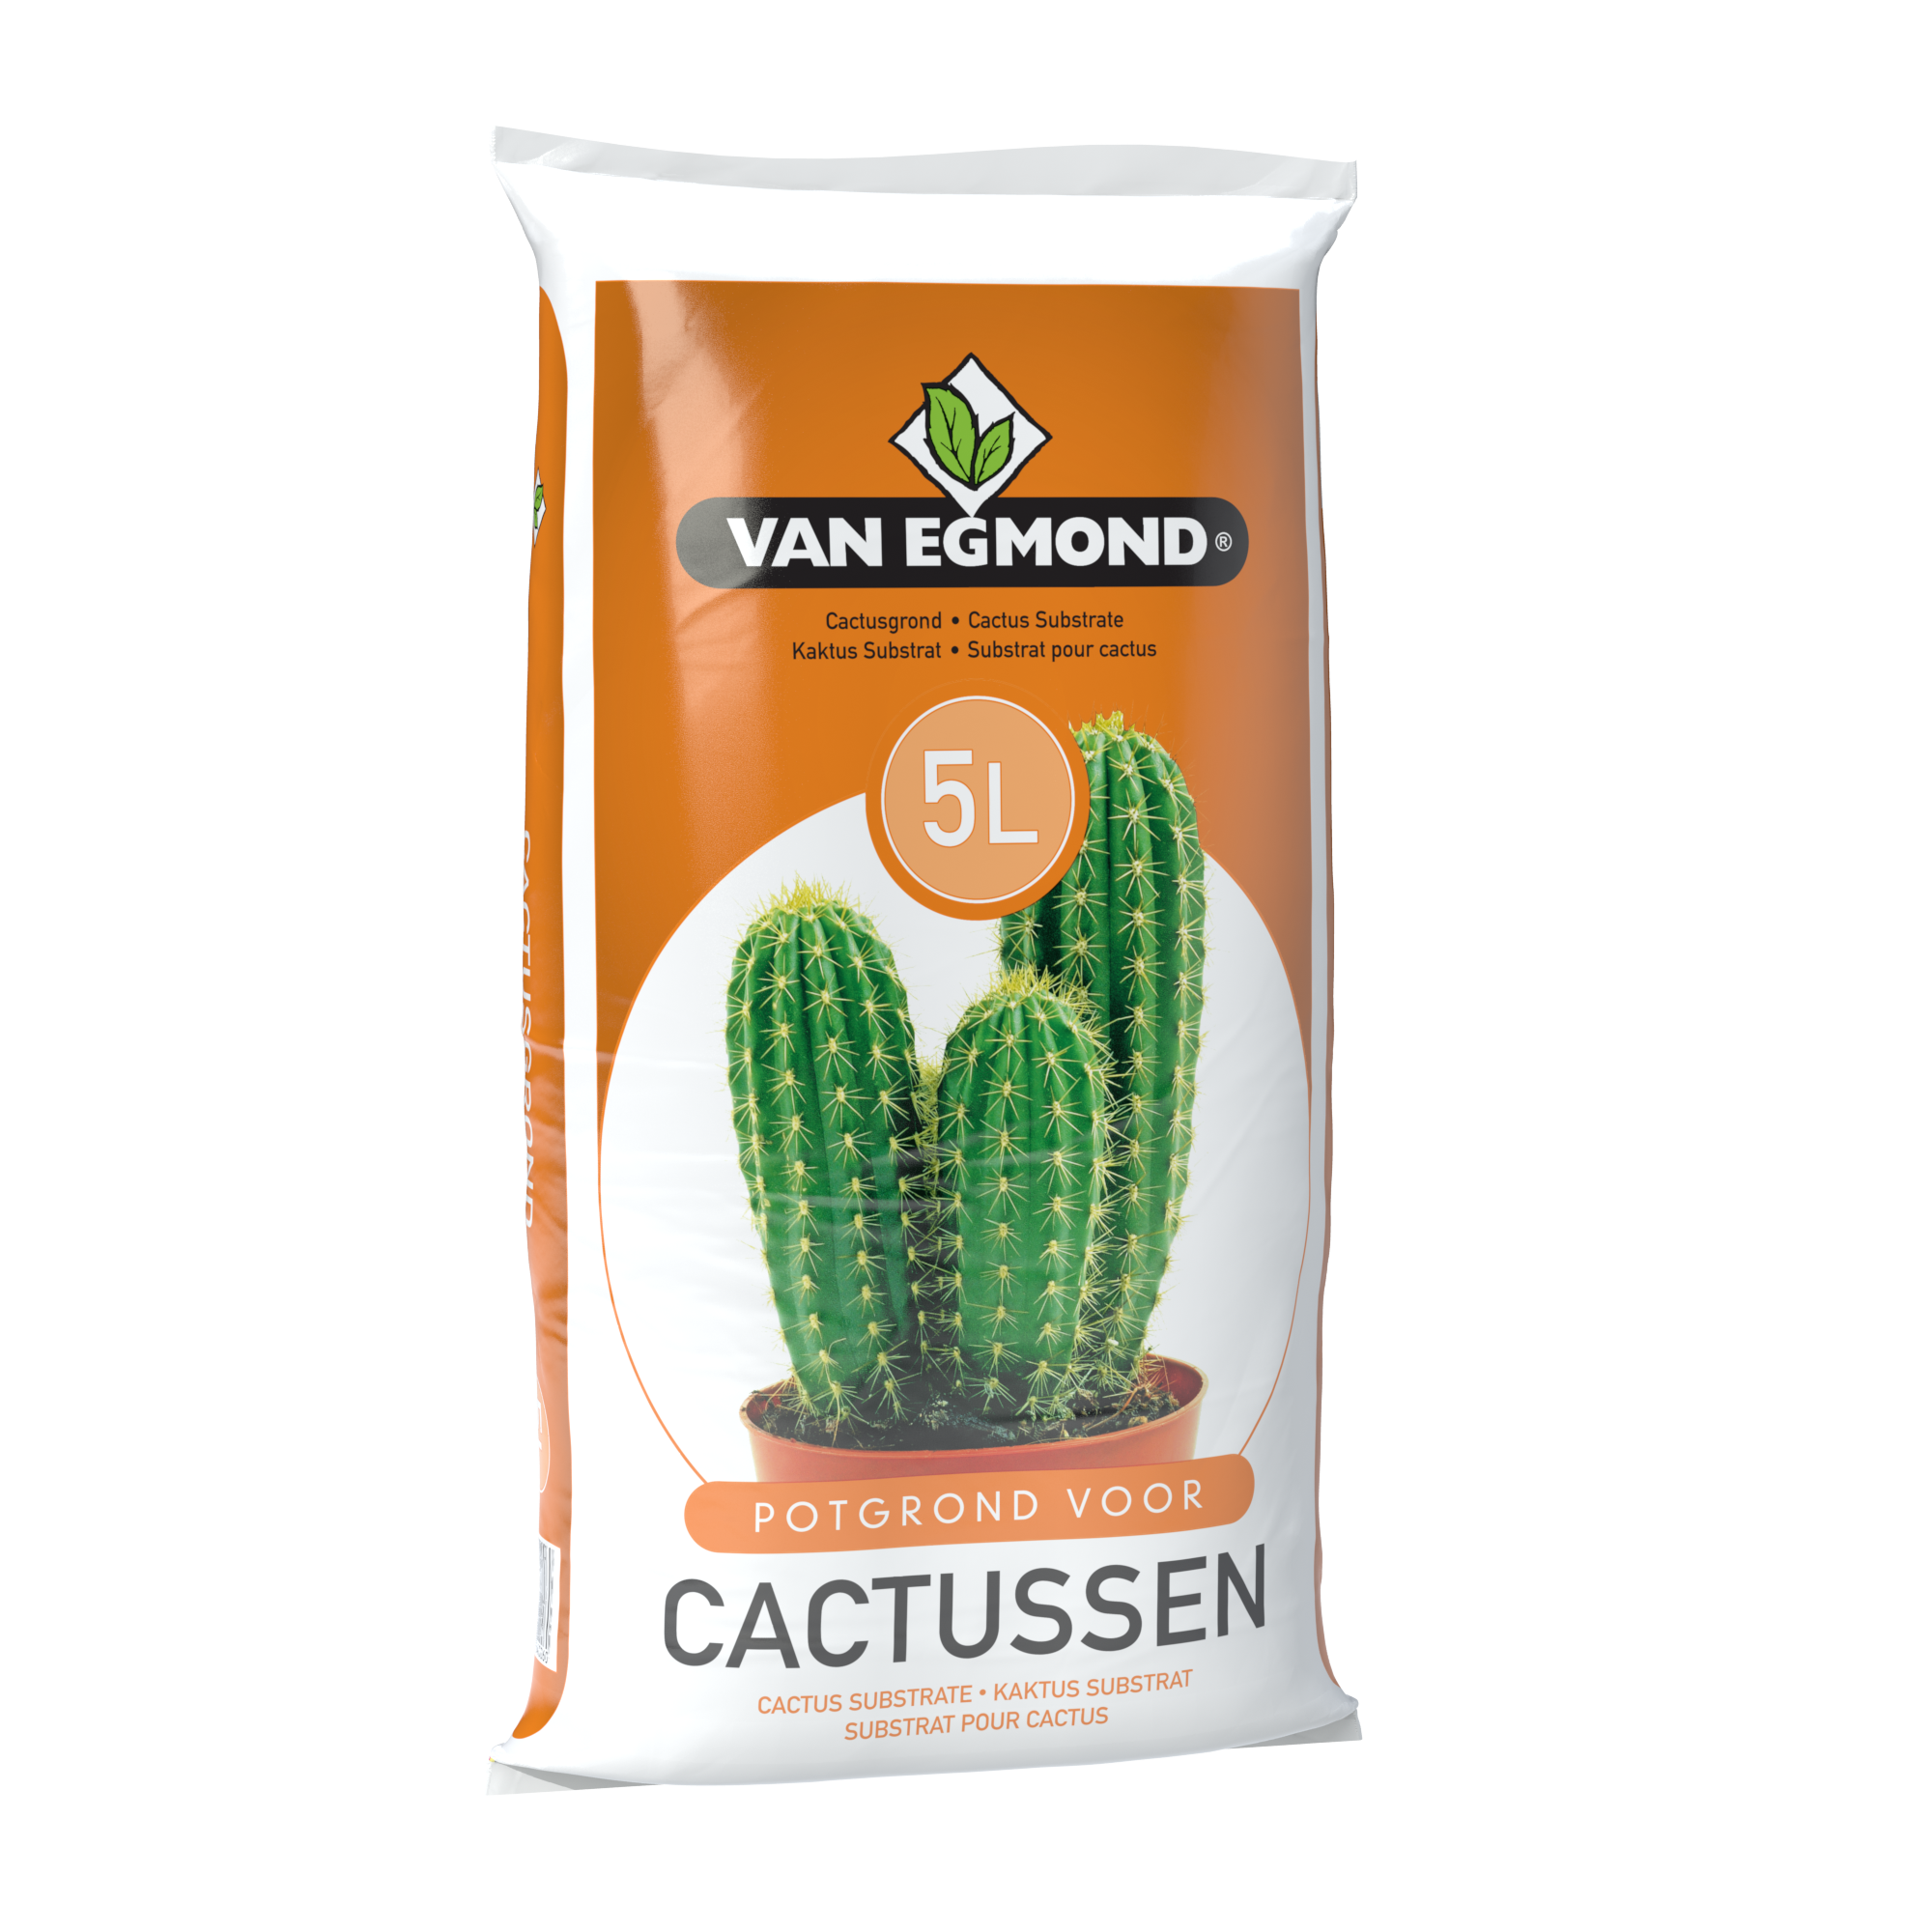 VAN EGMOND Cactus Substrate